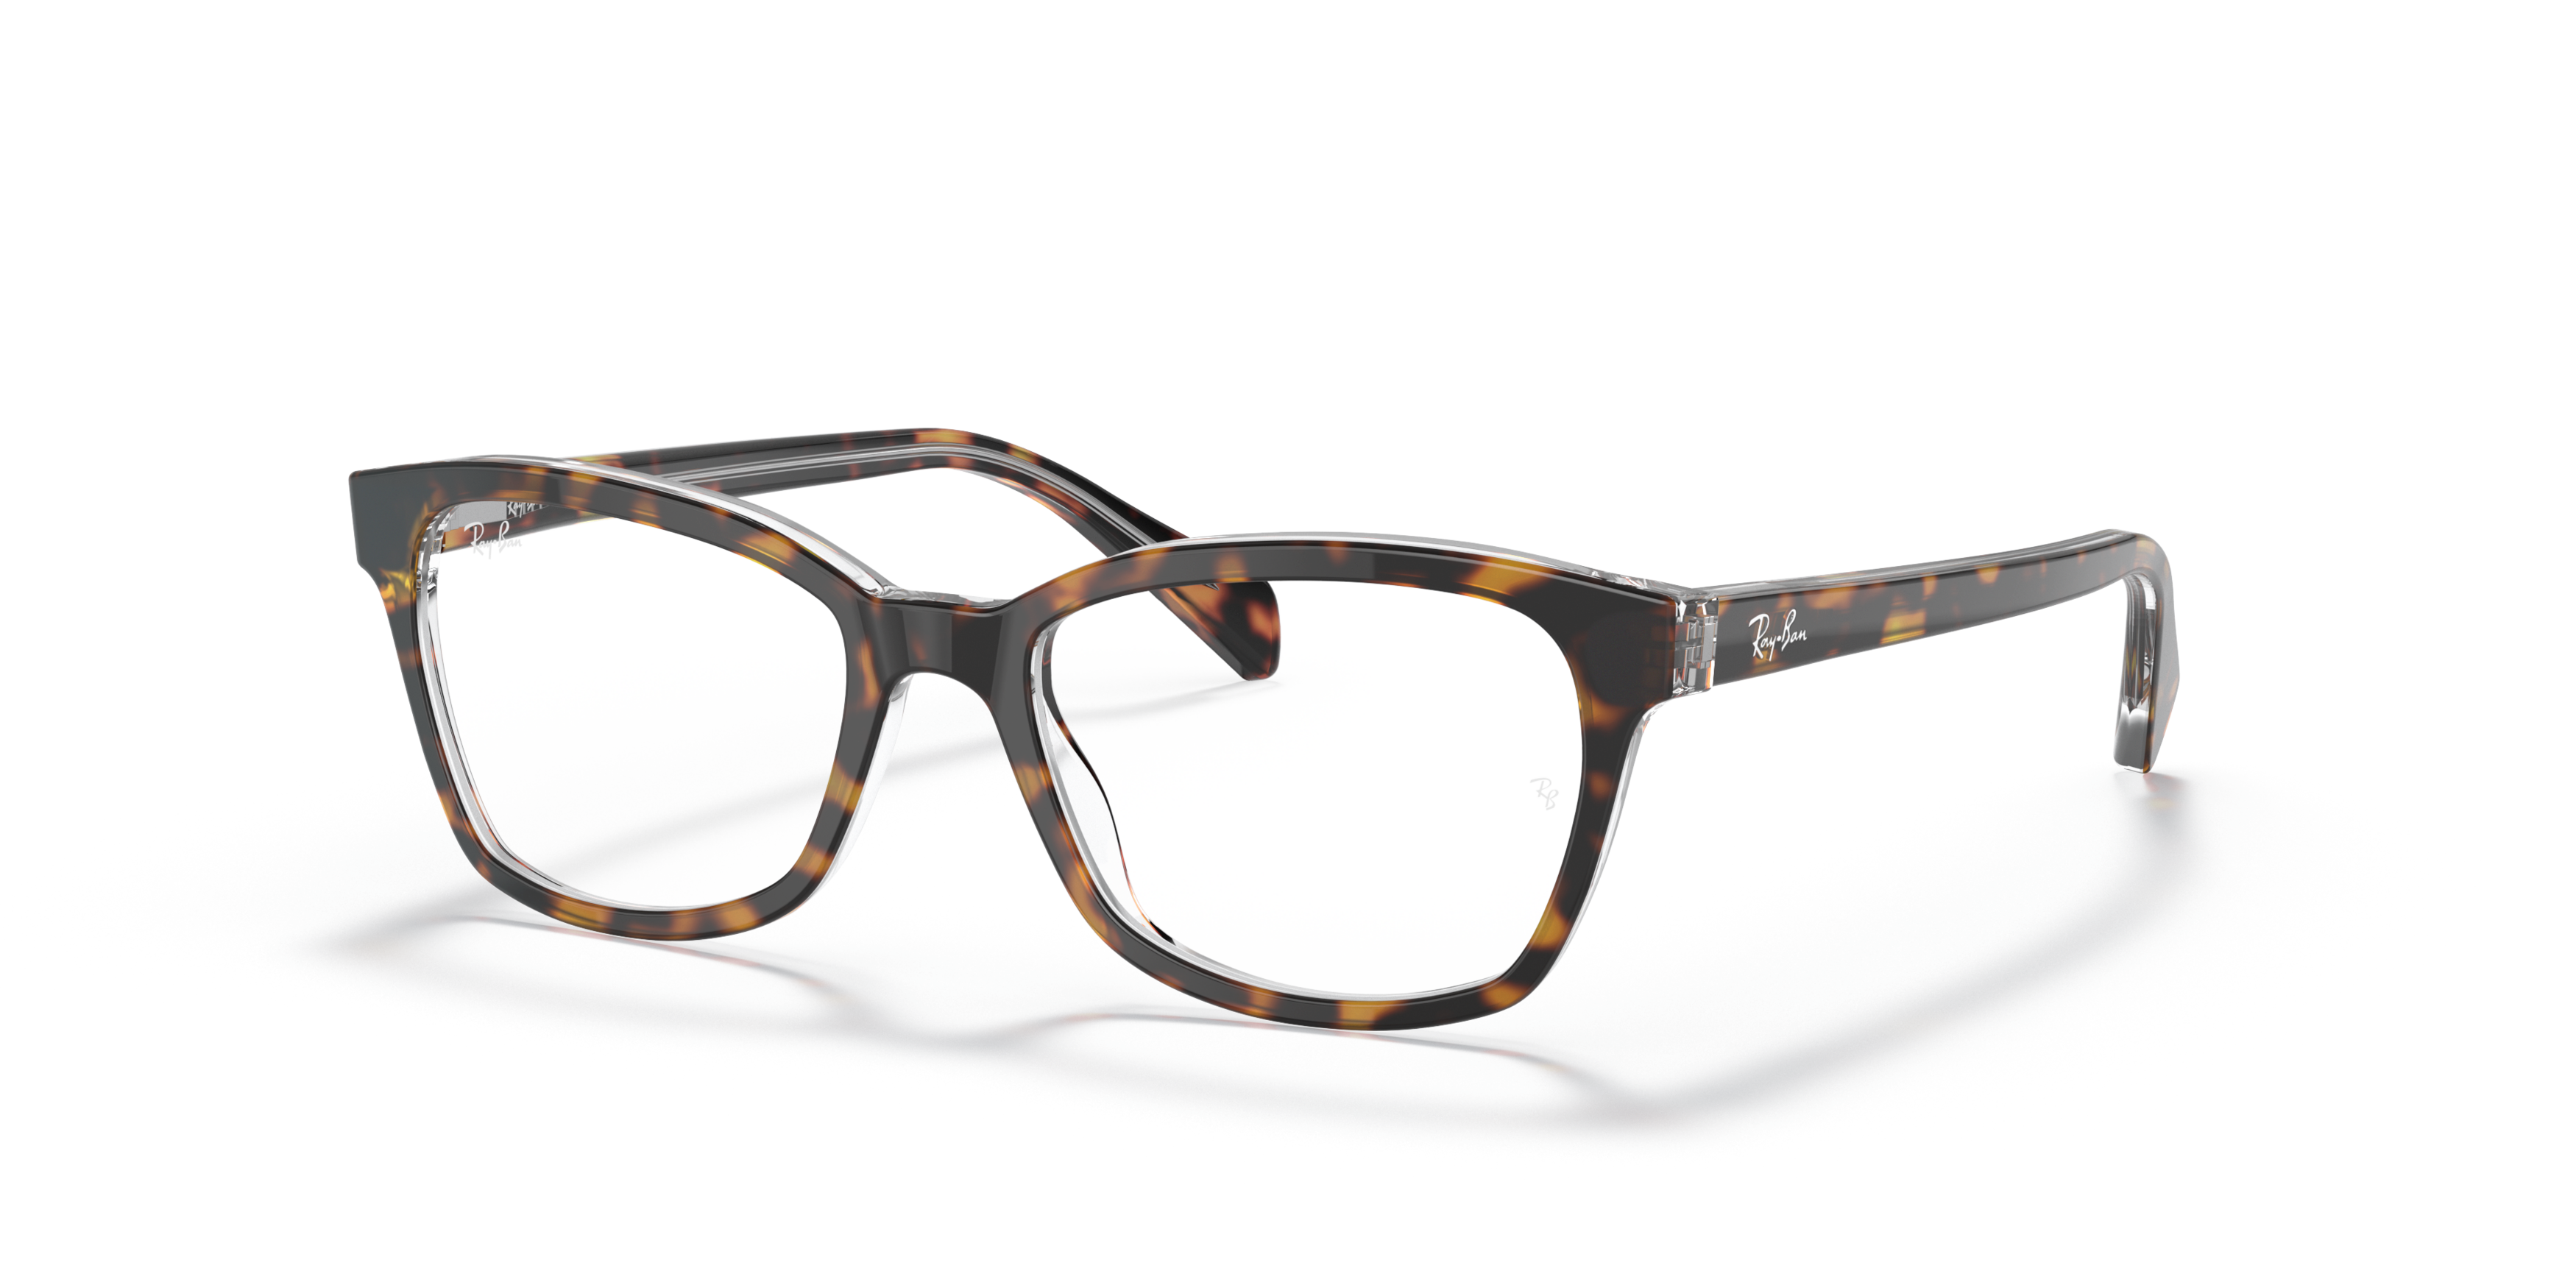 Angle_Left01 Ray-Ban Juniors RY 1591 (3805) Children's Glasses Transparent / Tortoise Shell